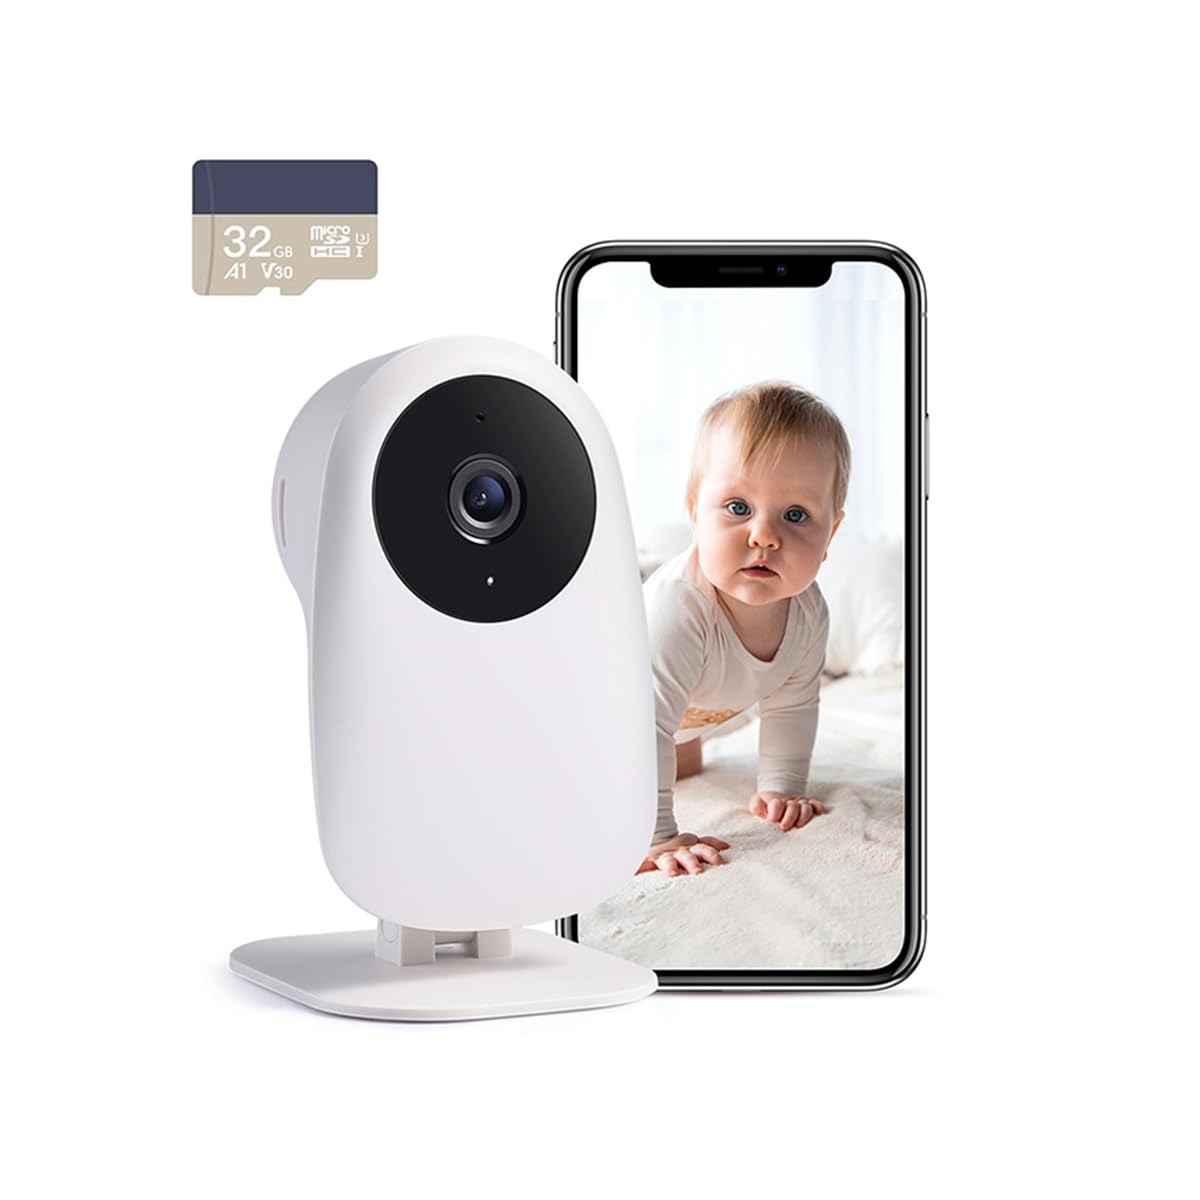 nooie Babyphone Kamera, Babyphone mit Kamera und SD Karte, WLAN Kamera Indoor mit APP und 1080P HD Nachtsicht Gegensprechfunktion Kompatibel mit Alexa und 2.4Ghz WiFi, Bewegungs Geräuscherkennung